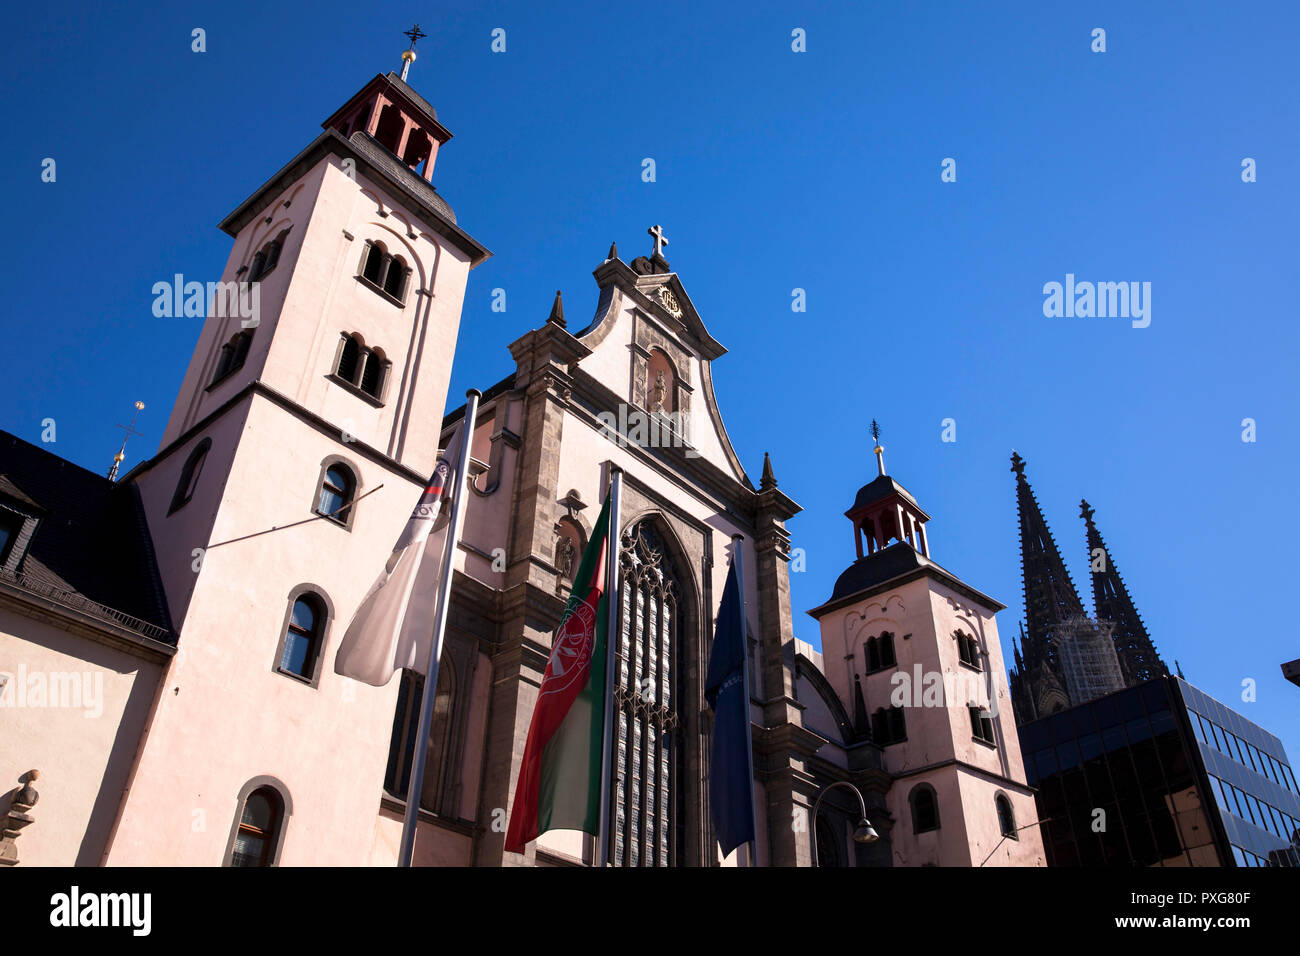 La barocca chiesa gesuita S. Mariae assunta al Marzellen street, sulla destra le guglie del duomo di Colonia, Germania. die fru Foto Stock